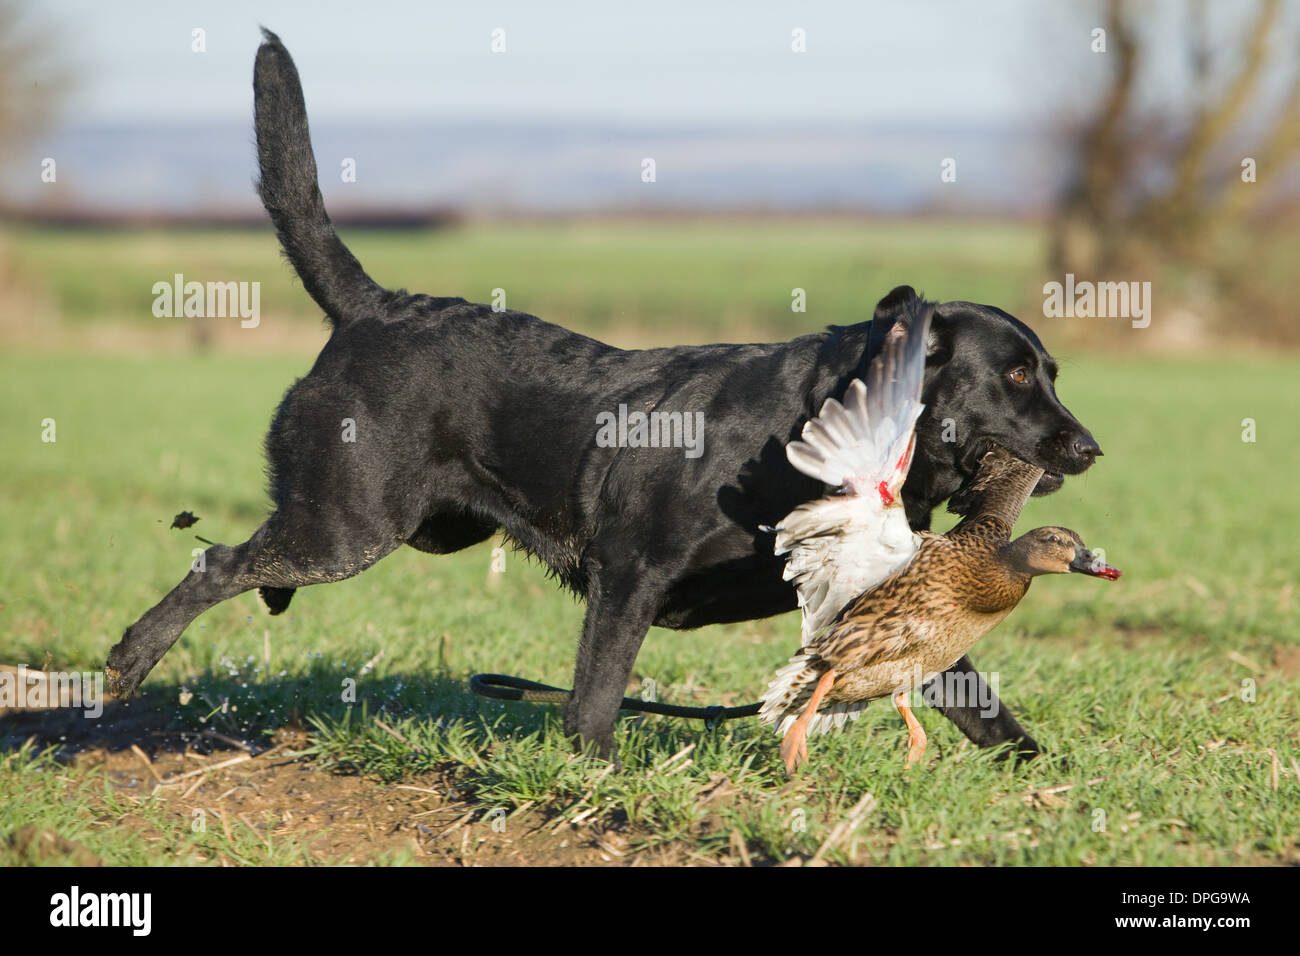 A Black Labrador Retriever retrieving a duck on a shoot in England Stock Photo